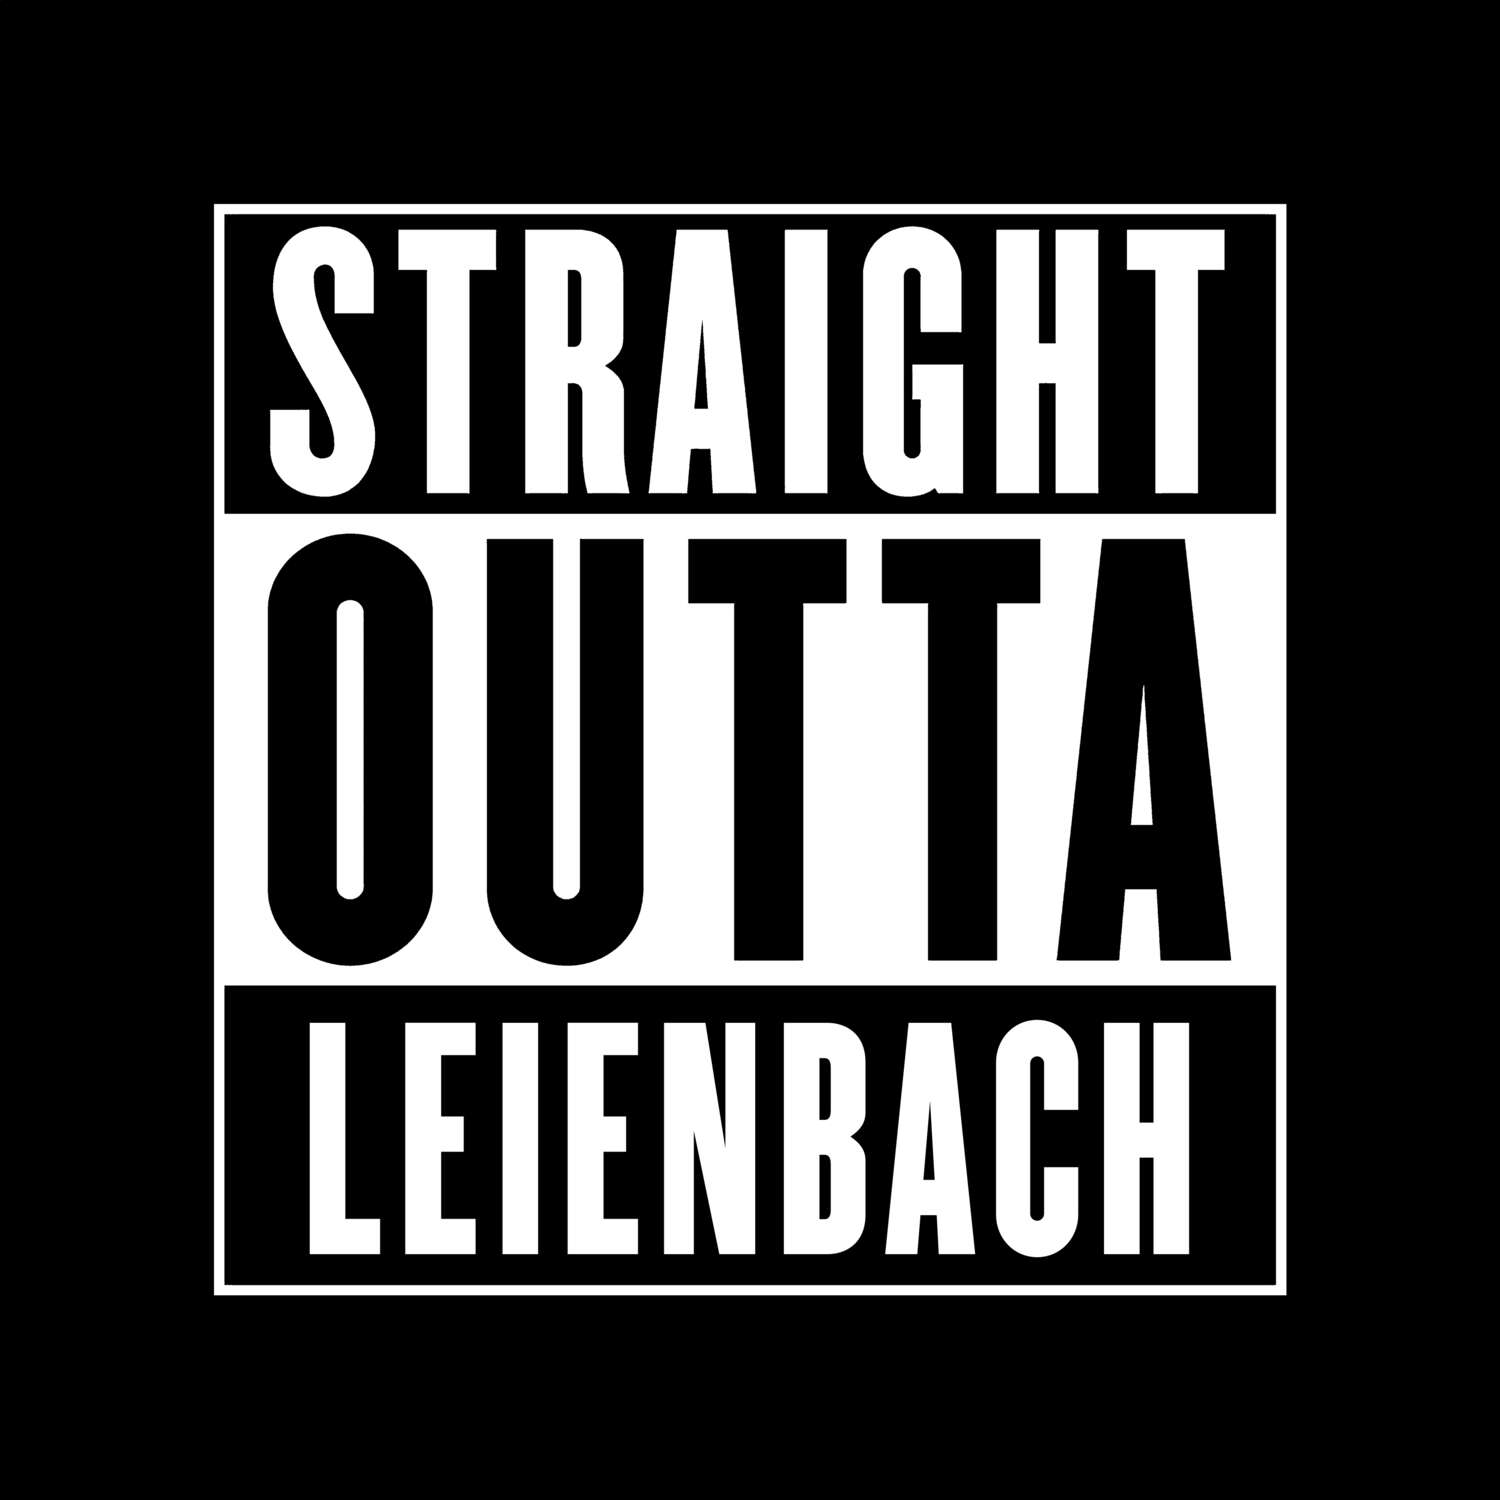 Leienbach T-Shirt »Straight Outta«